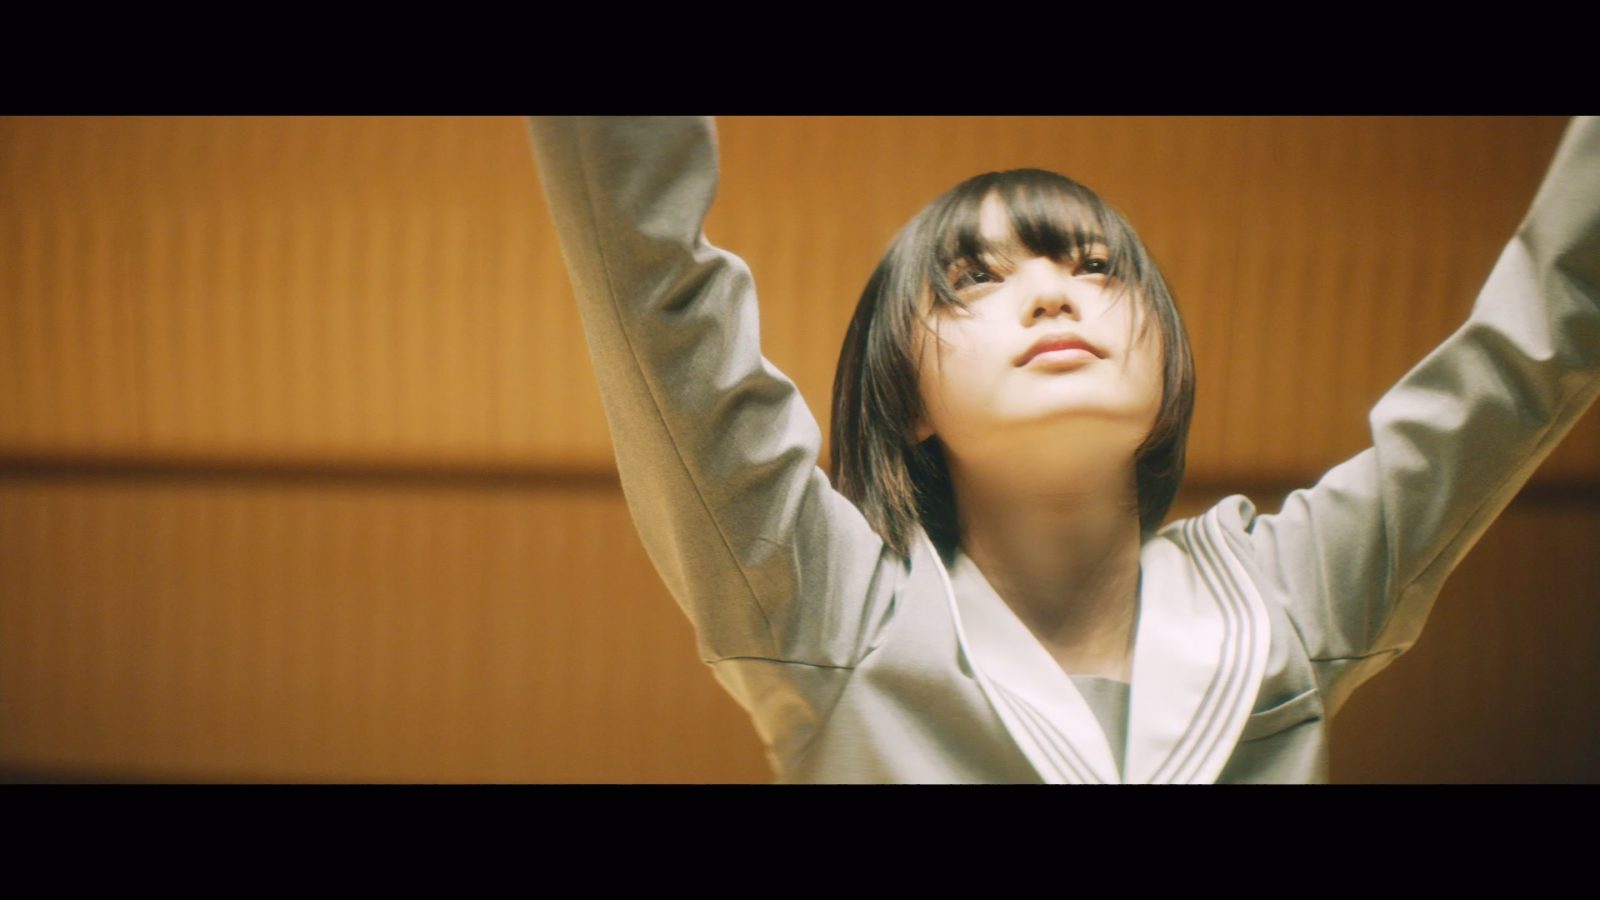 欅坂46・平手友梨奈のソロ曲「角を曲がる」のMusic Videoが突如公開にサムネイル画像!